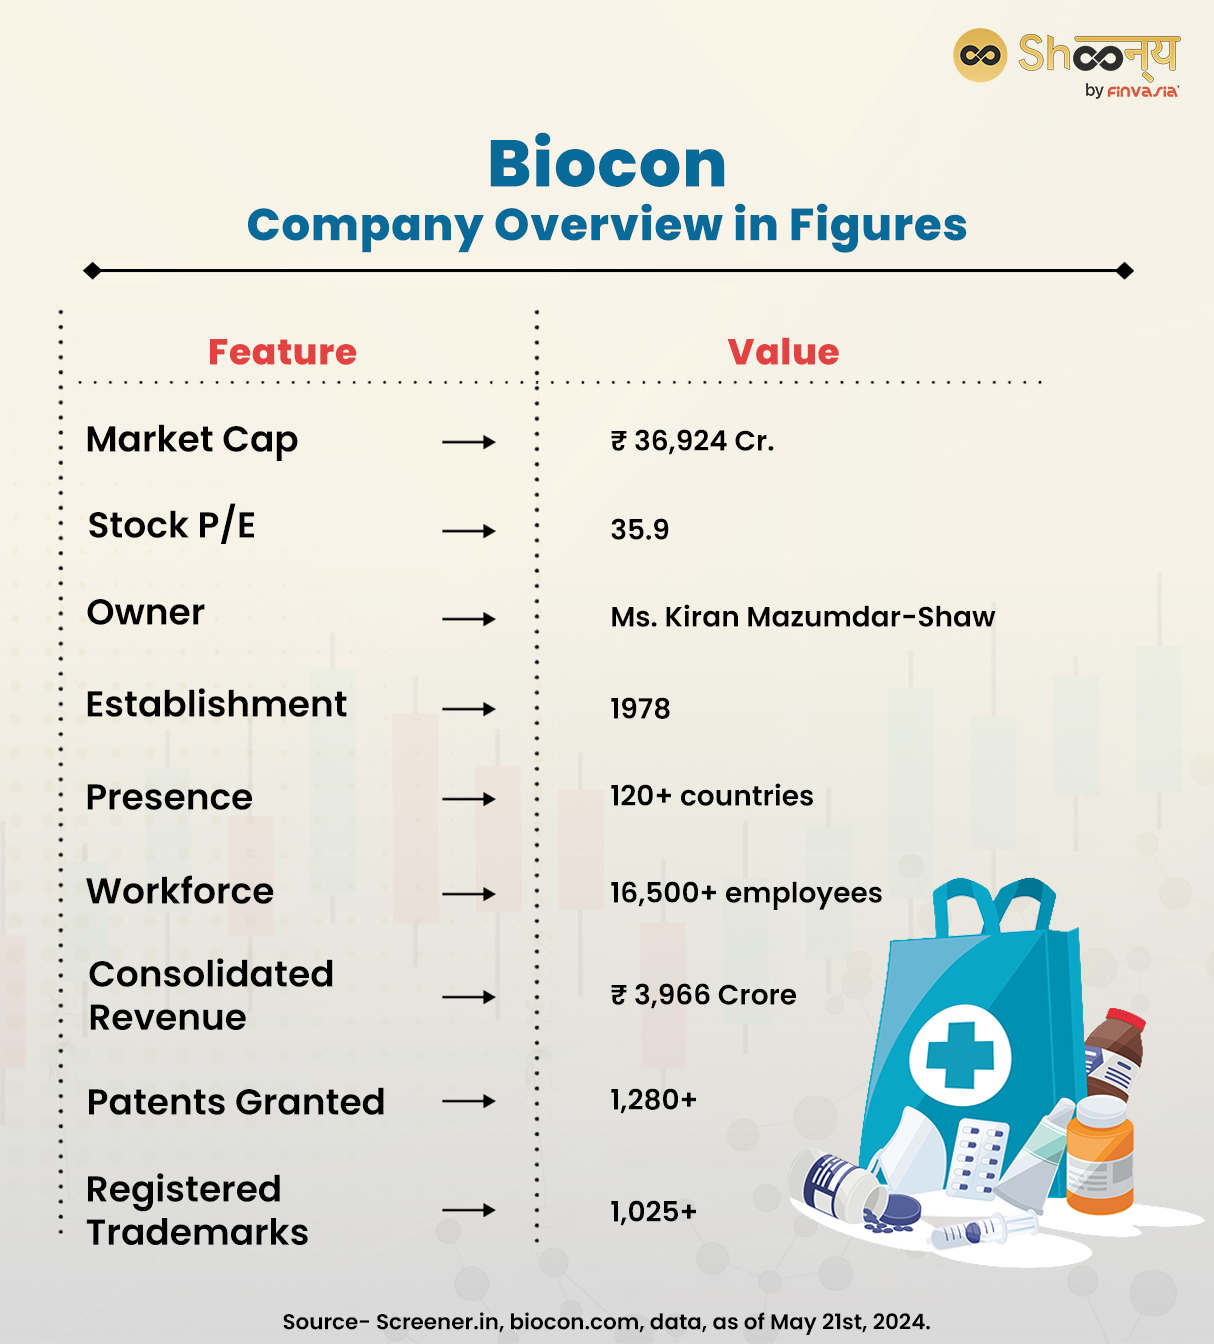 Biocon Company